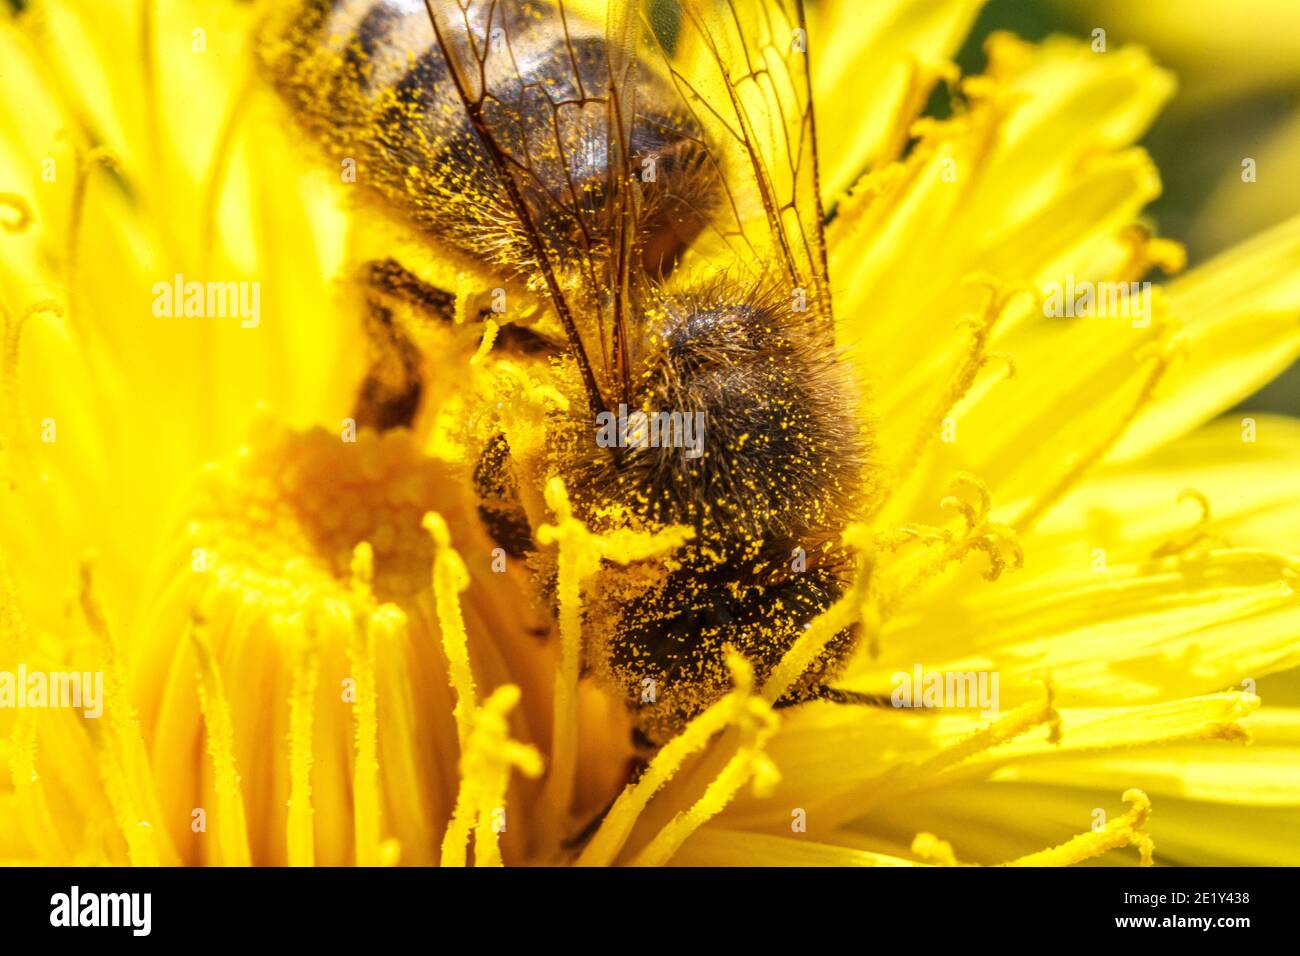 Honigbiene mit gelben Pollen bedeckt trinken Nektar, bestäuben gelbe Löwenzahn Blume. Inspirierende natürliche Blumen Frühling oder Sommer blühenden Garten Stockfoto